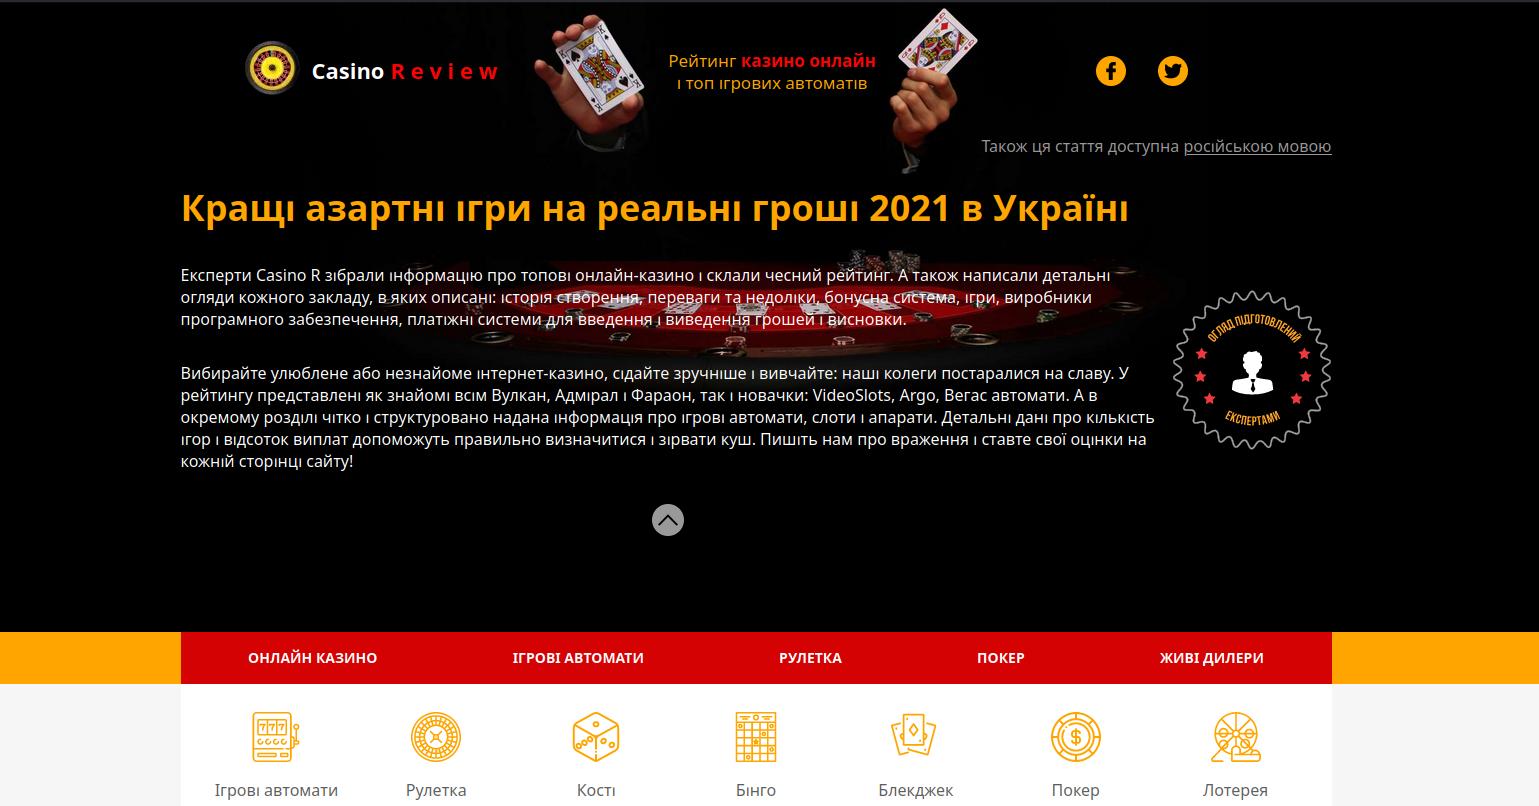 Лучшее онлайн казино Украины – что определяет популярность игрового ресурса